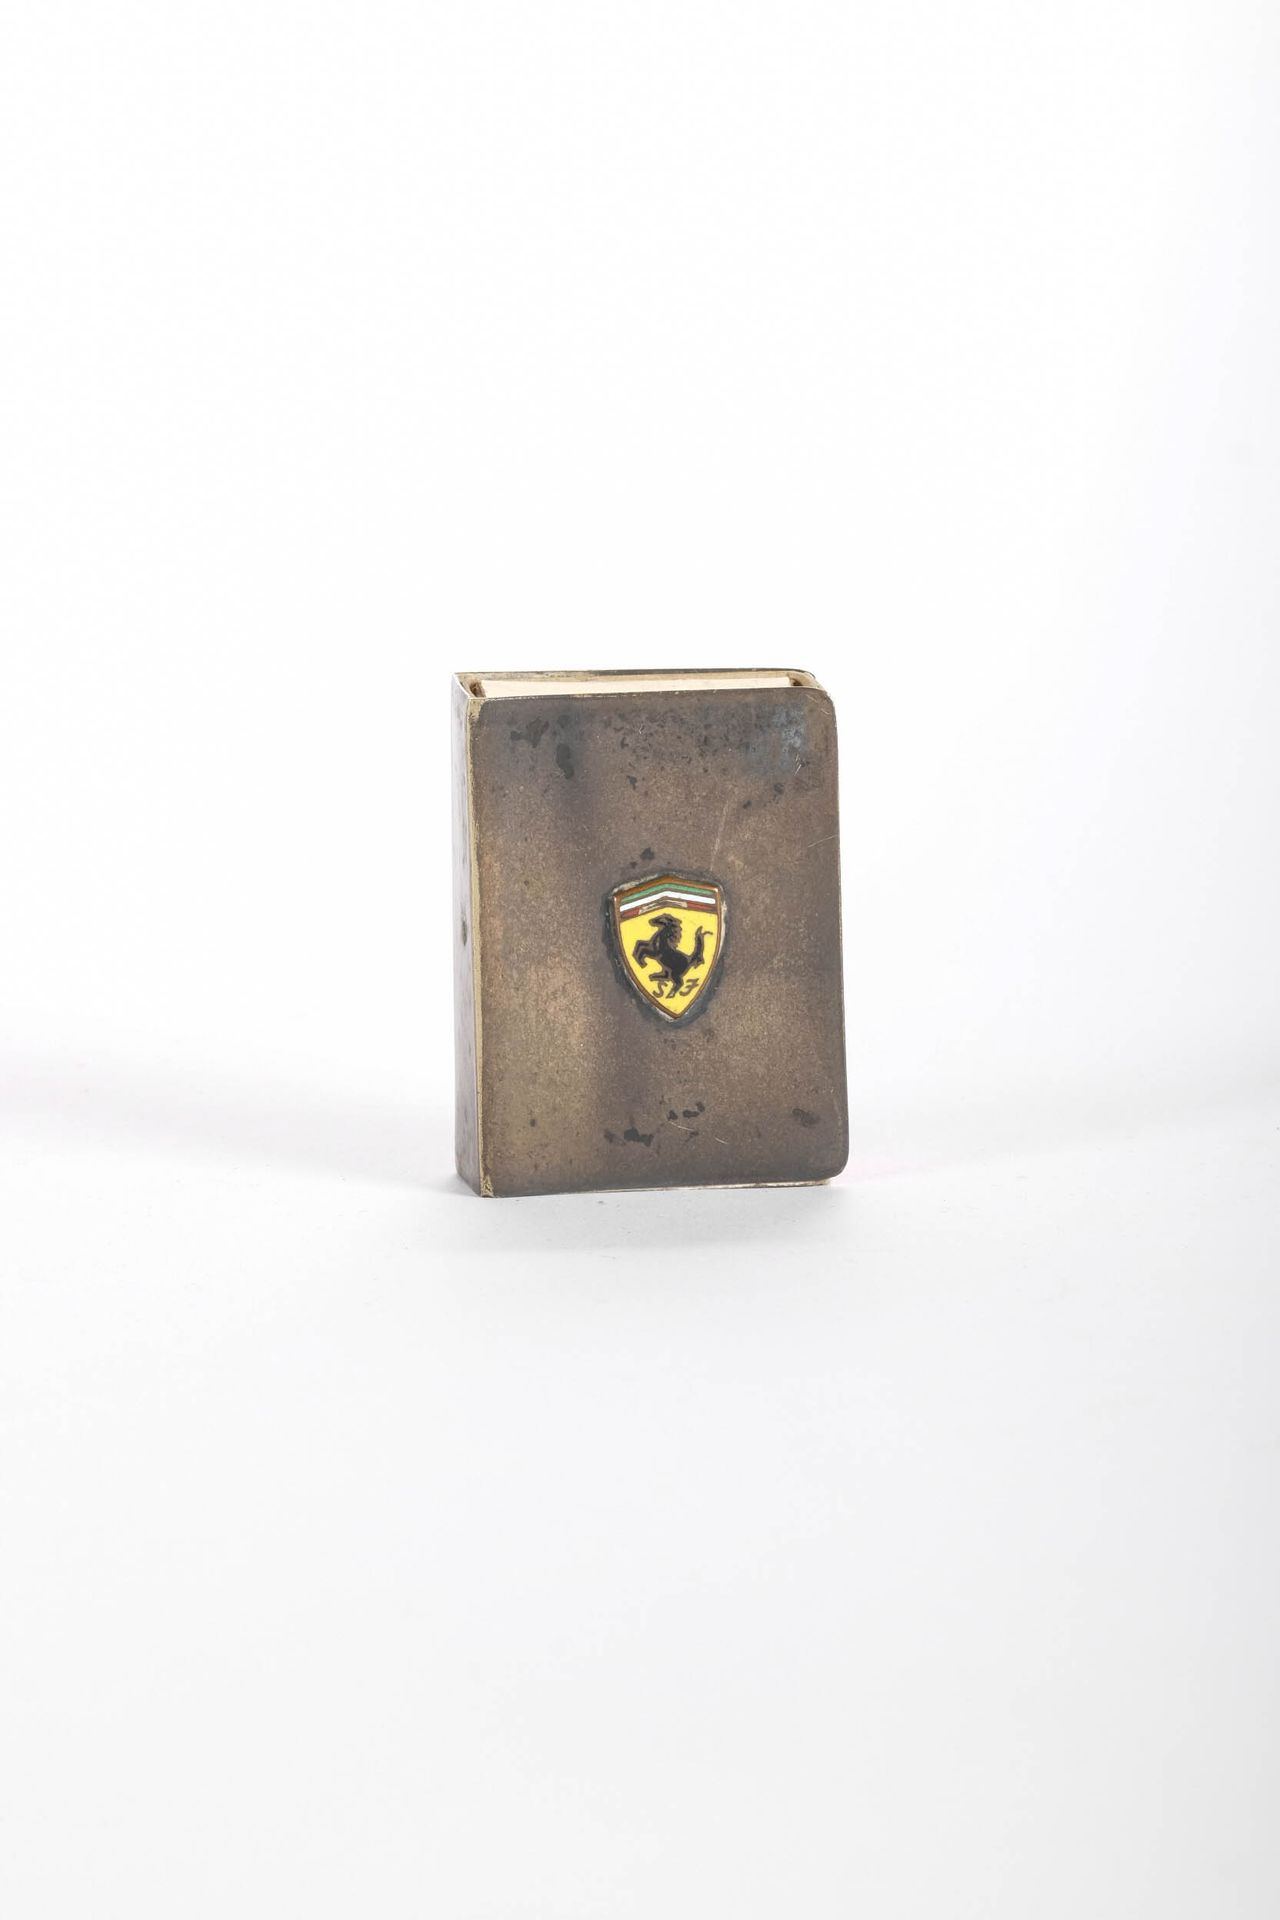 FERRARI Etui de boite d’allumette en métal argenté, logo Ferrari en émail cloiso&hellip;